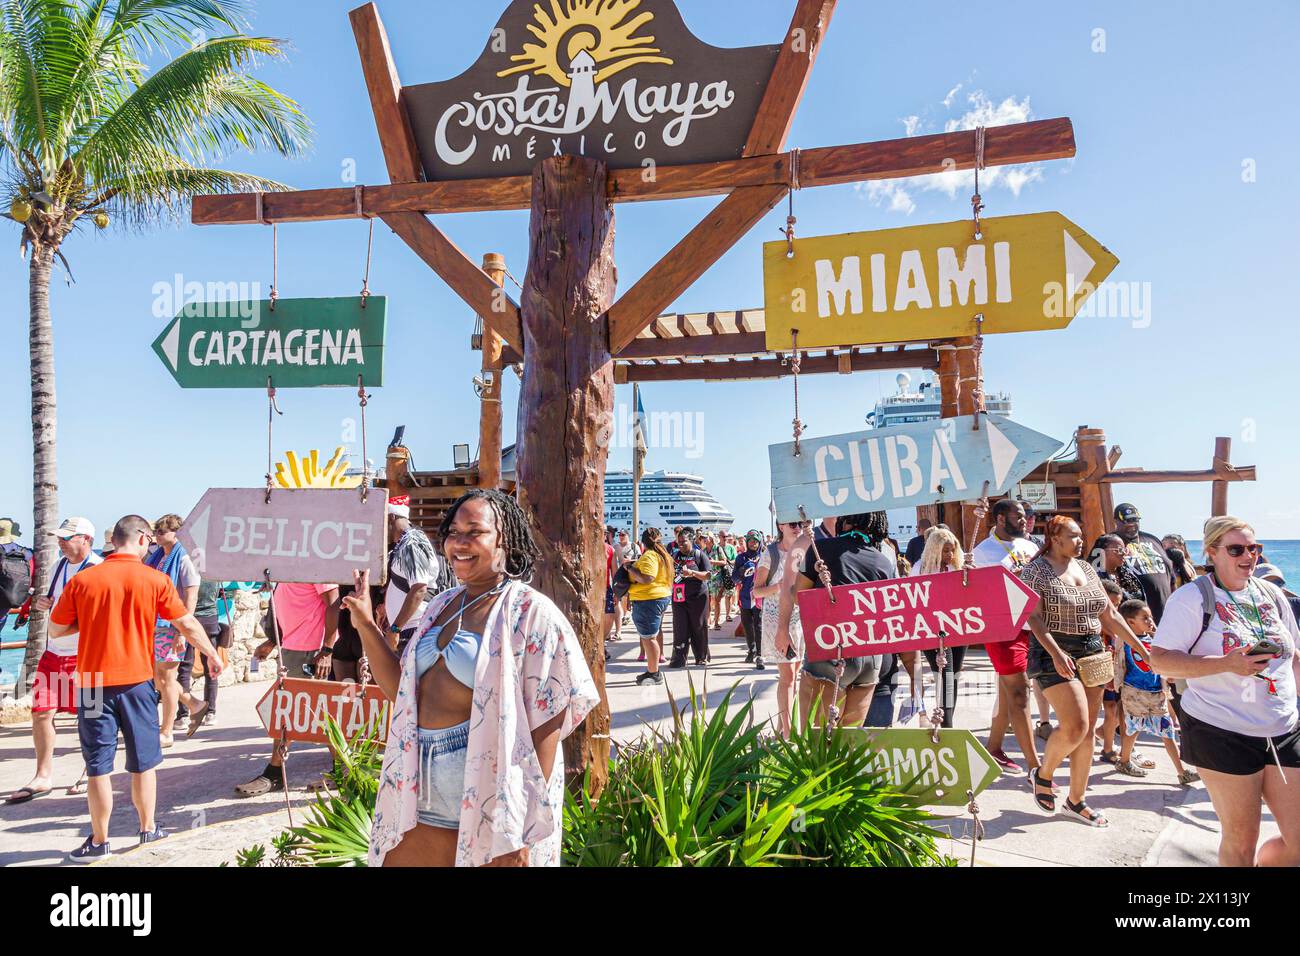 Costa Maya Mexique, Port de croisière, navire Norwegian Joy Cruise Line, itinéraire de 7 jours de la mer des Caraïbes, passager de femme noire posant, signes directions lointaine citie Banque D'Images